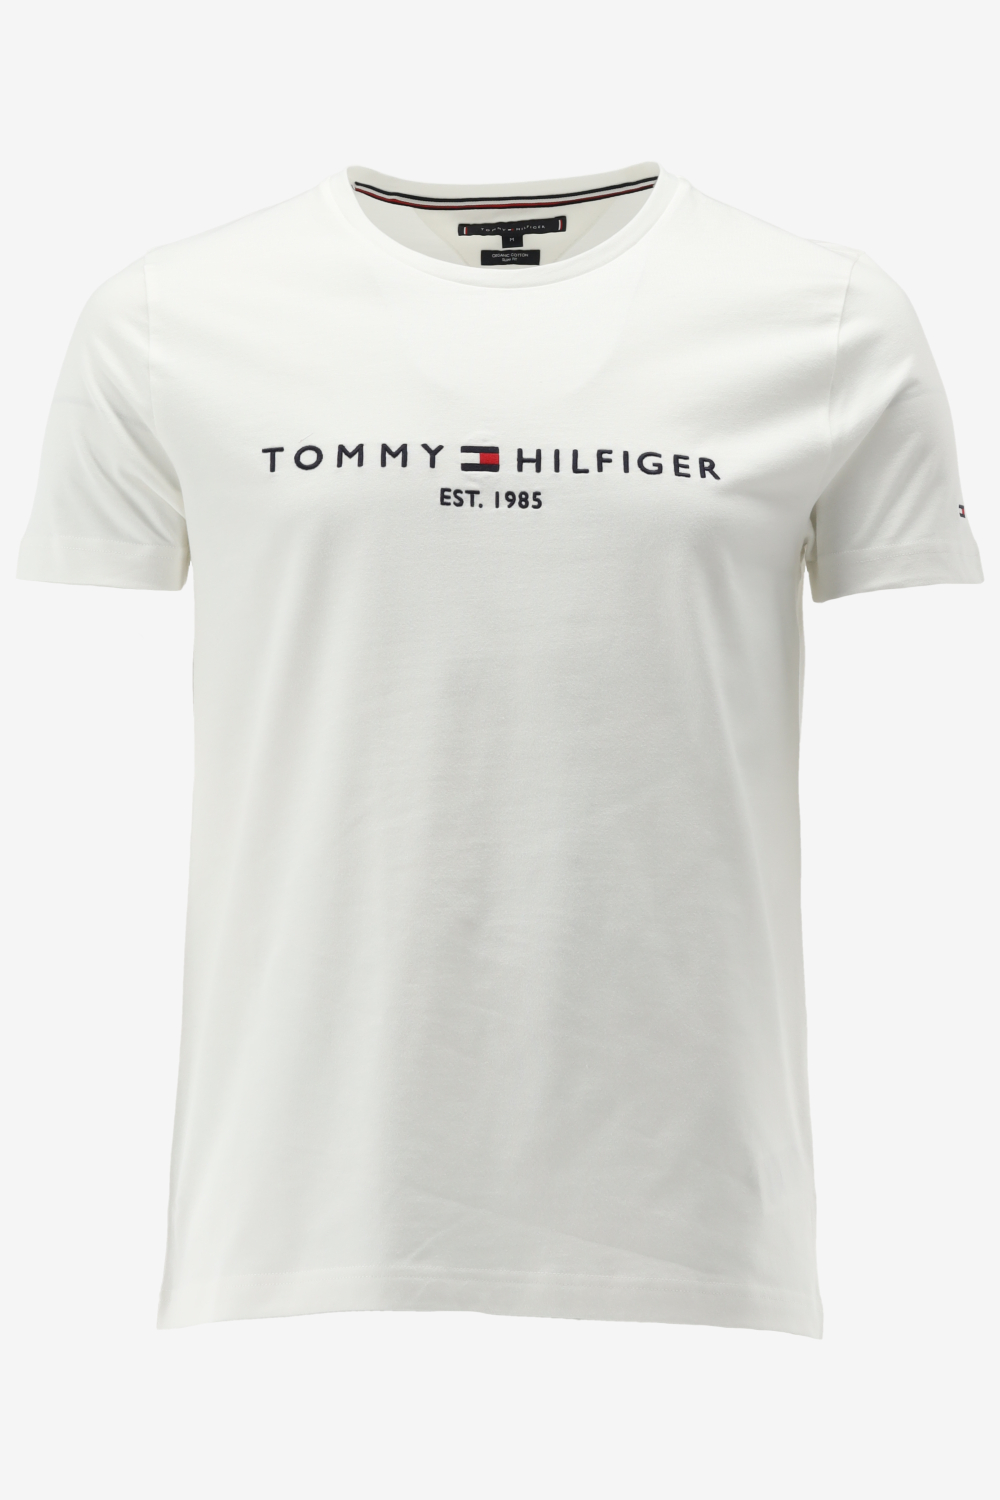 Tommy Hilfiger T shirt T SHIRT TOMMY HILFIGER LOGO